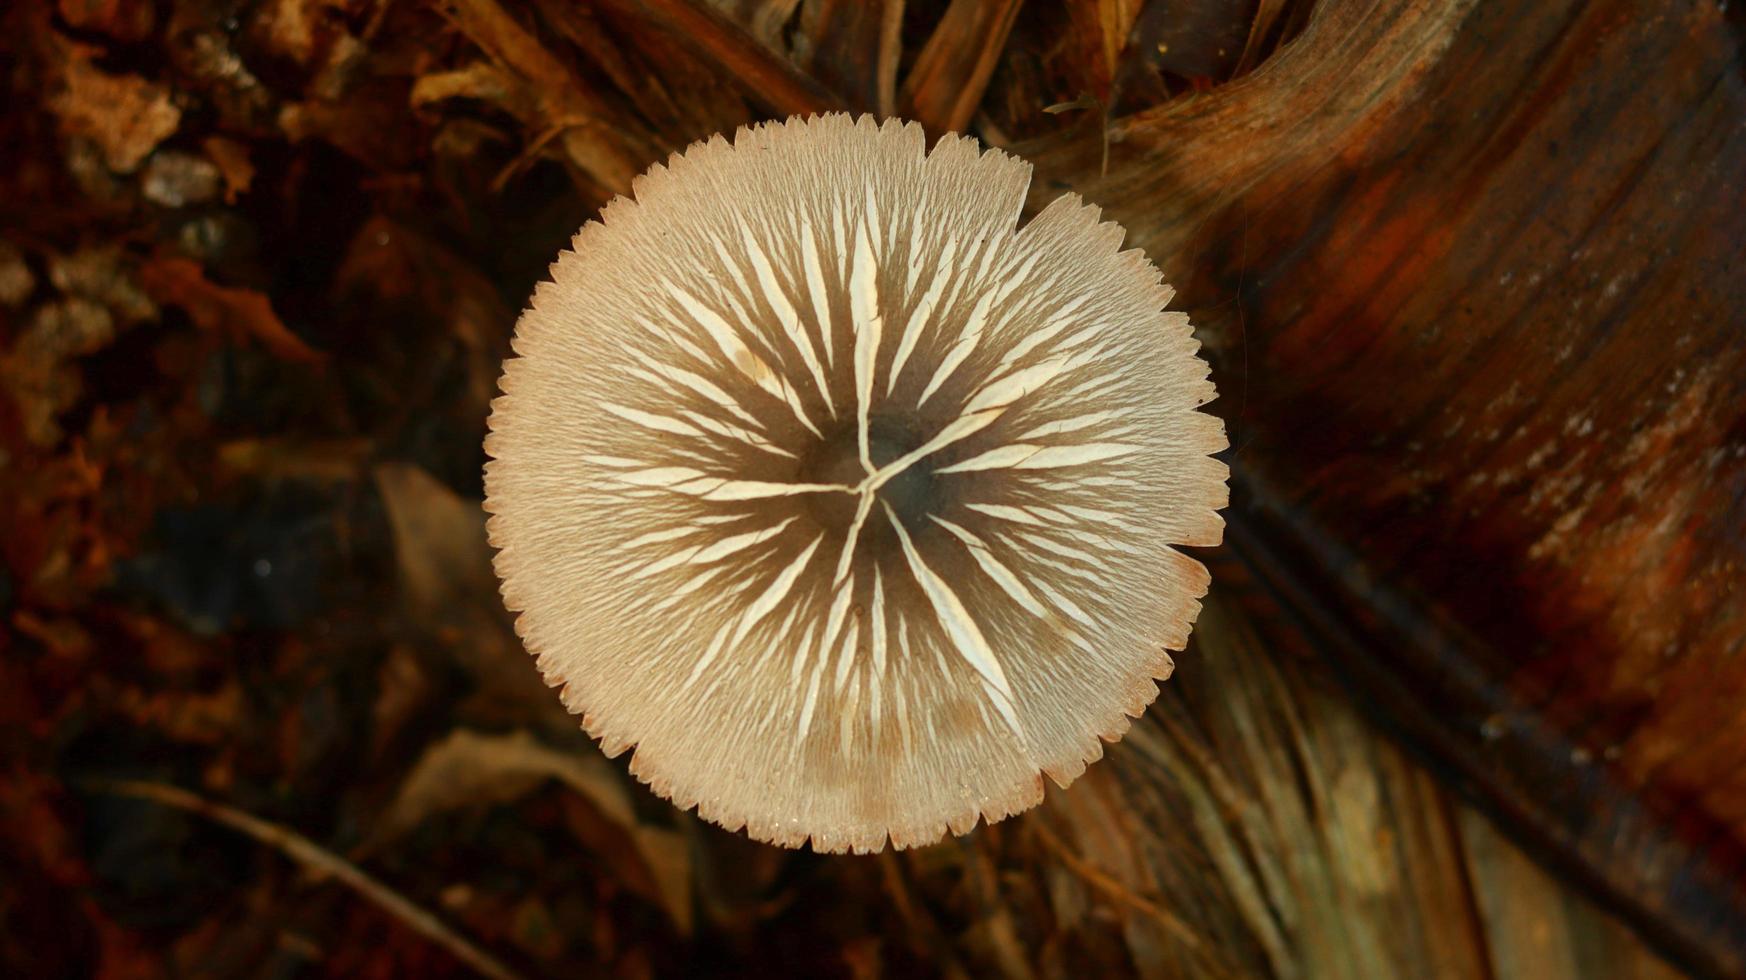 paddenstoelplant die groeit op een rottende bananenstam op een wazige natuurachtergrond. foto